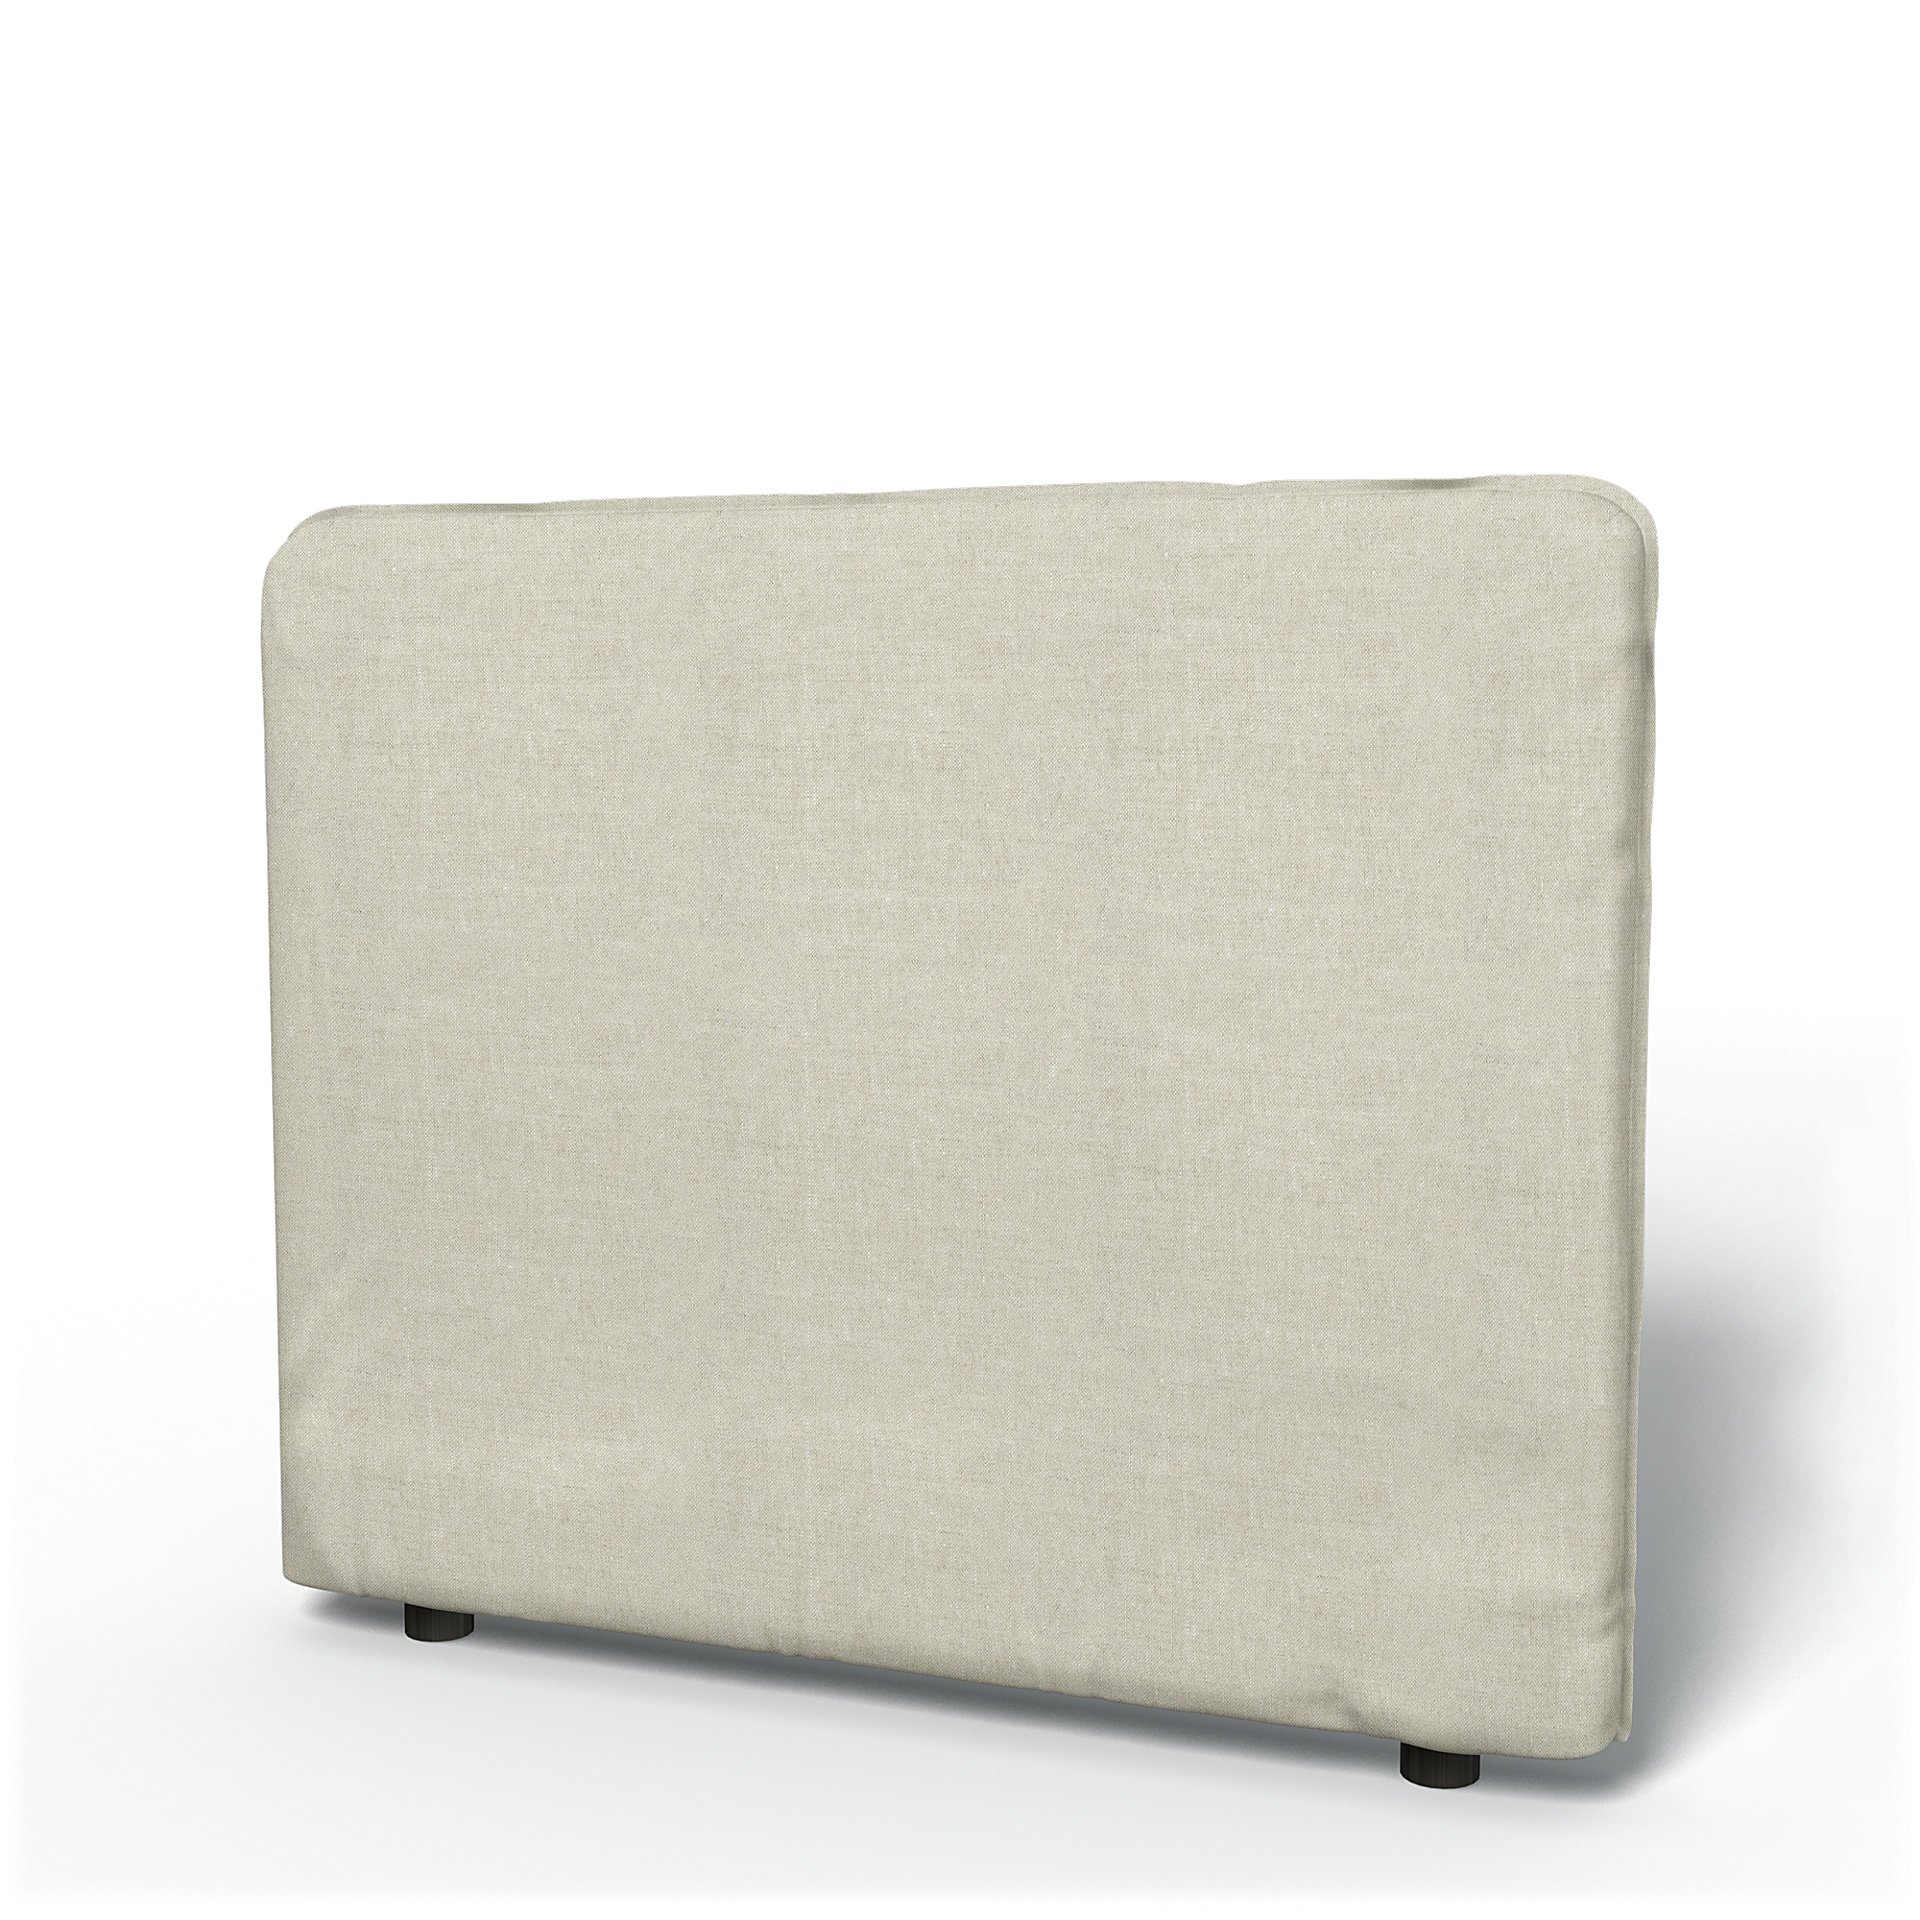 IKEA - Vallentuna Low Backrest Cover 100x80cm 39x32in, Natural, Linen - Bemz